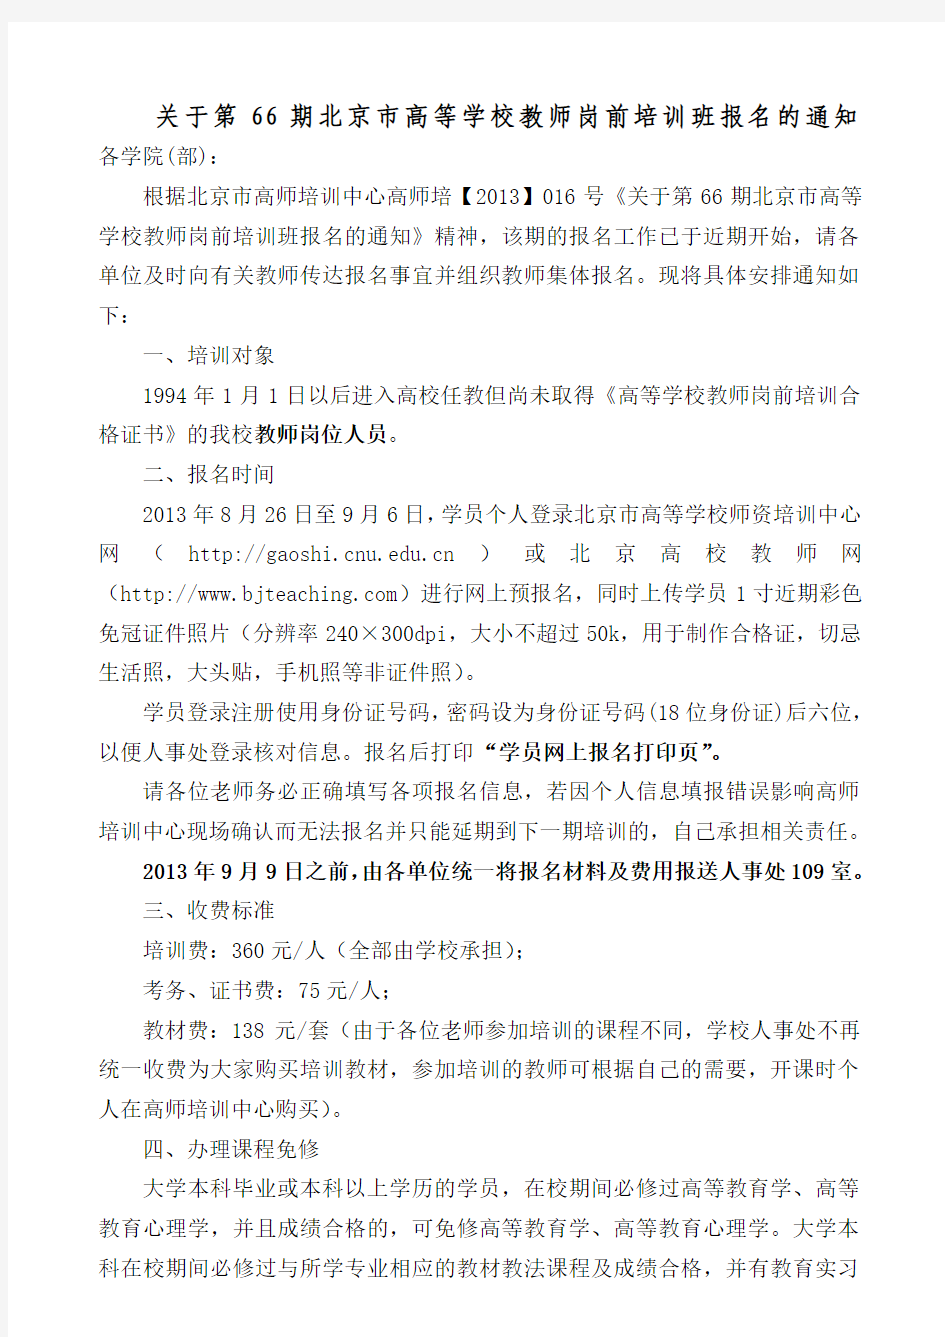 关于第66期北京市高等学校教师岗前培训班报名的通知